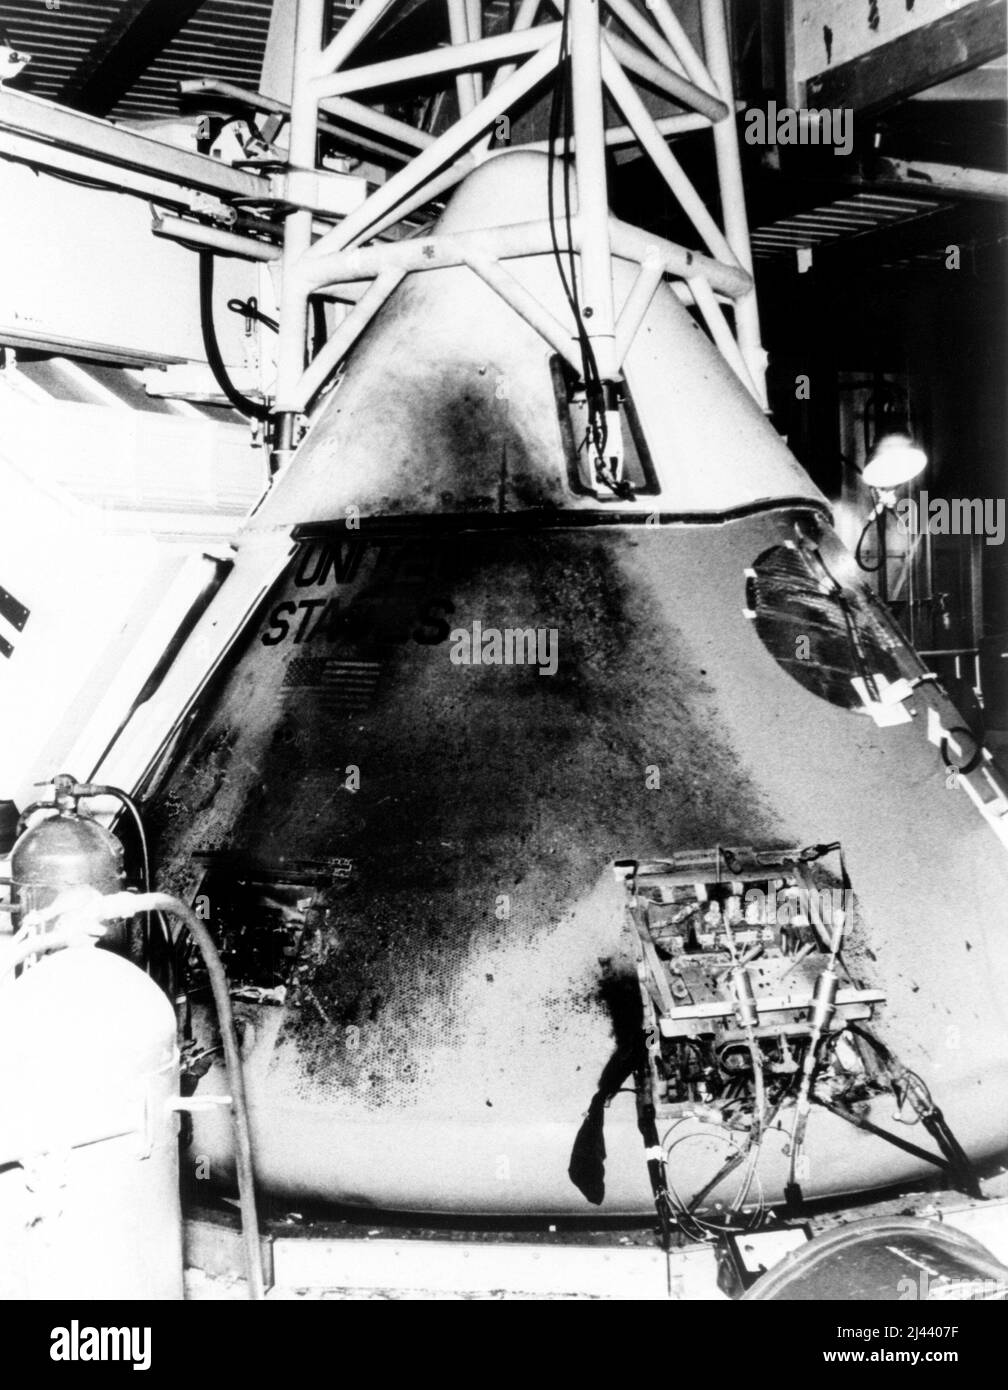 Cette photo montre le module de commande d'Apollo 1 un jour après l'incendie qui a pris la vie des astronautes Lt. Coll 'Gus' Ivan Grissom, Lt. Col. Edward Higgins White II et Lt. CDR. Roger Bruce Chaffee. La photographie a été prise dans la salle blanche du Launch Complex 34.q Banque D'Images